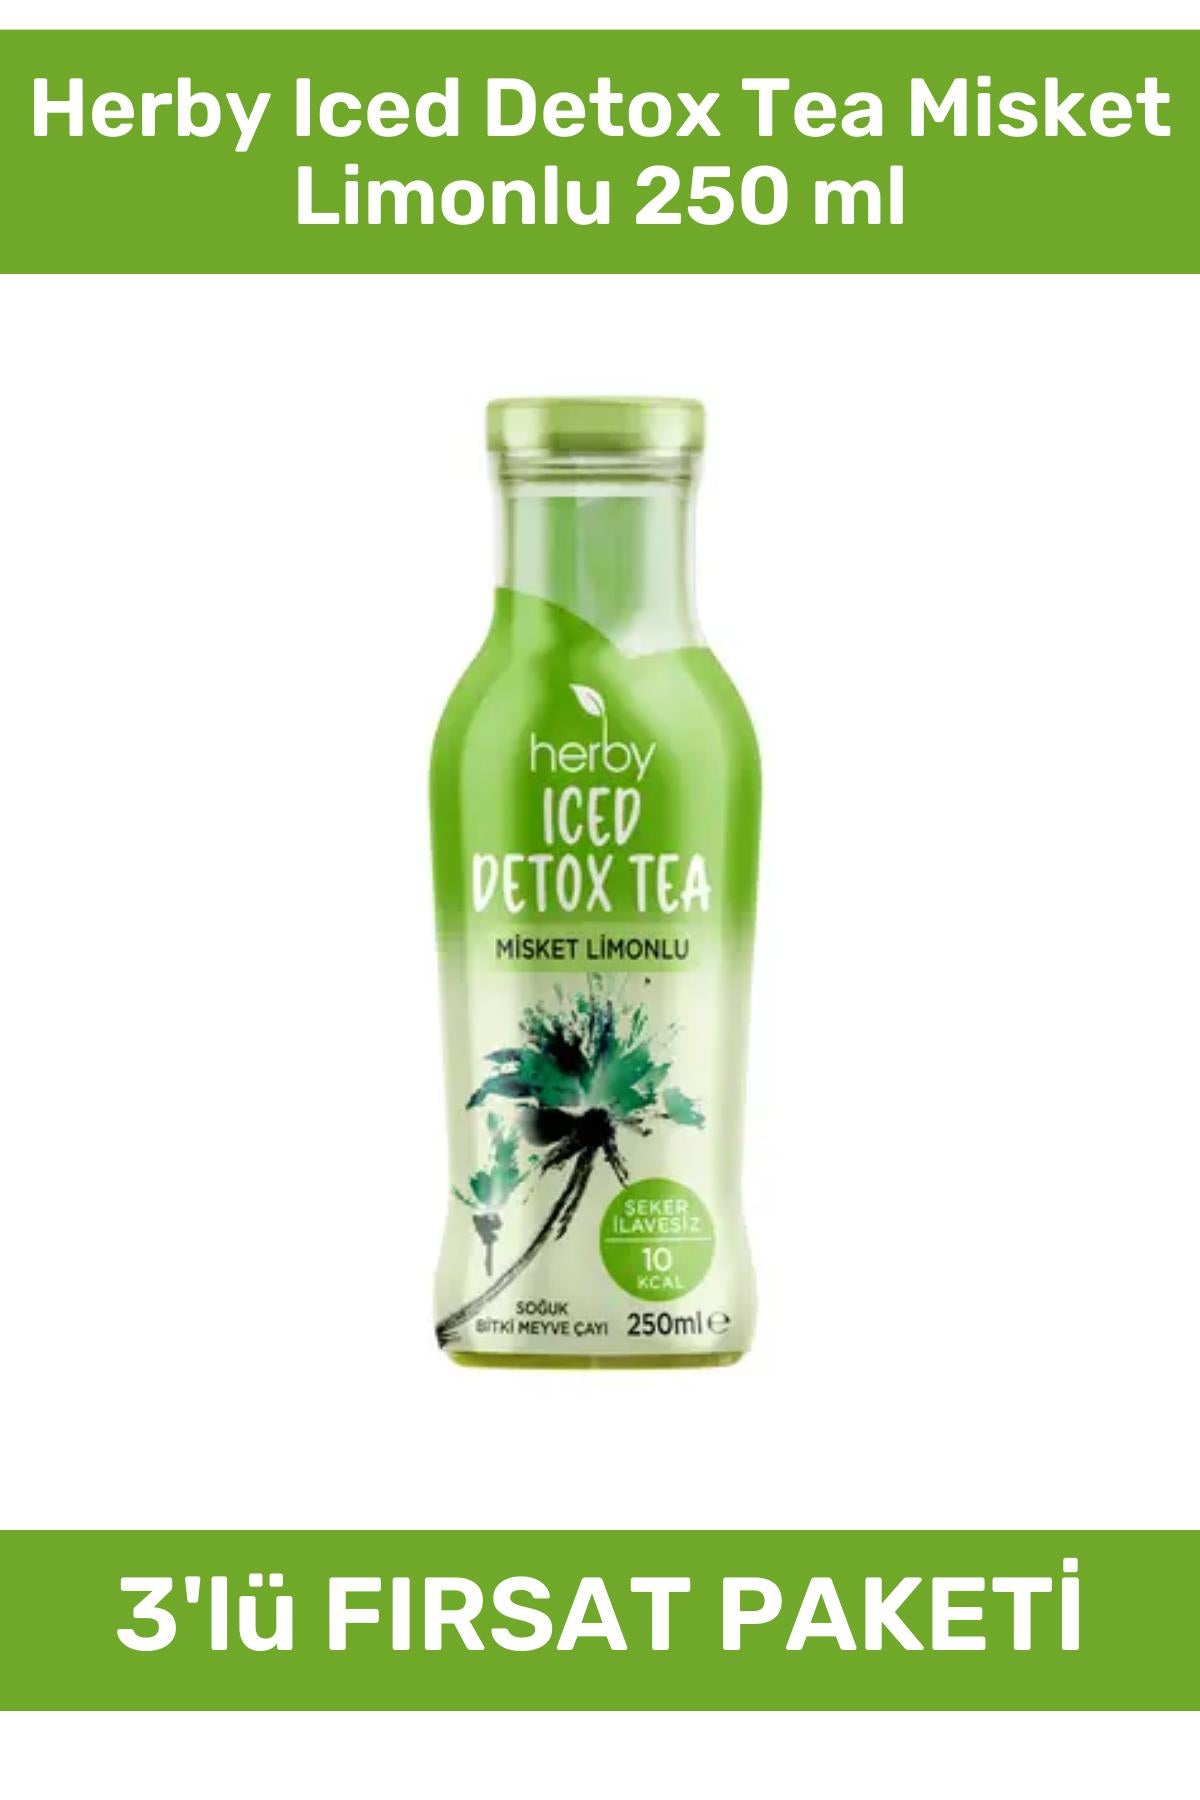 Herby Iced Detox Tea Misket Limonlu 250 ml 3'lü Paket